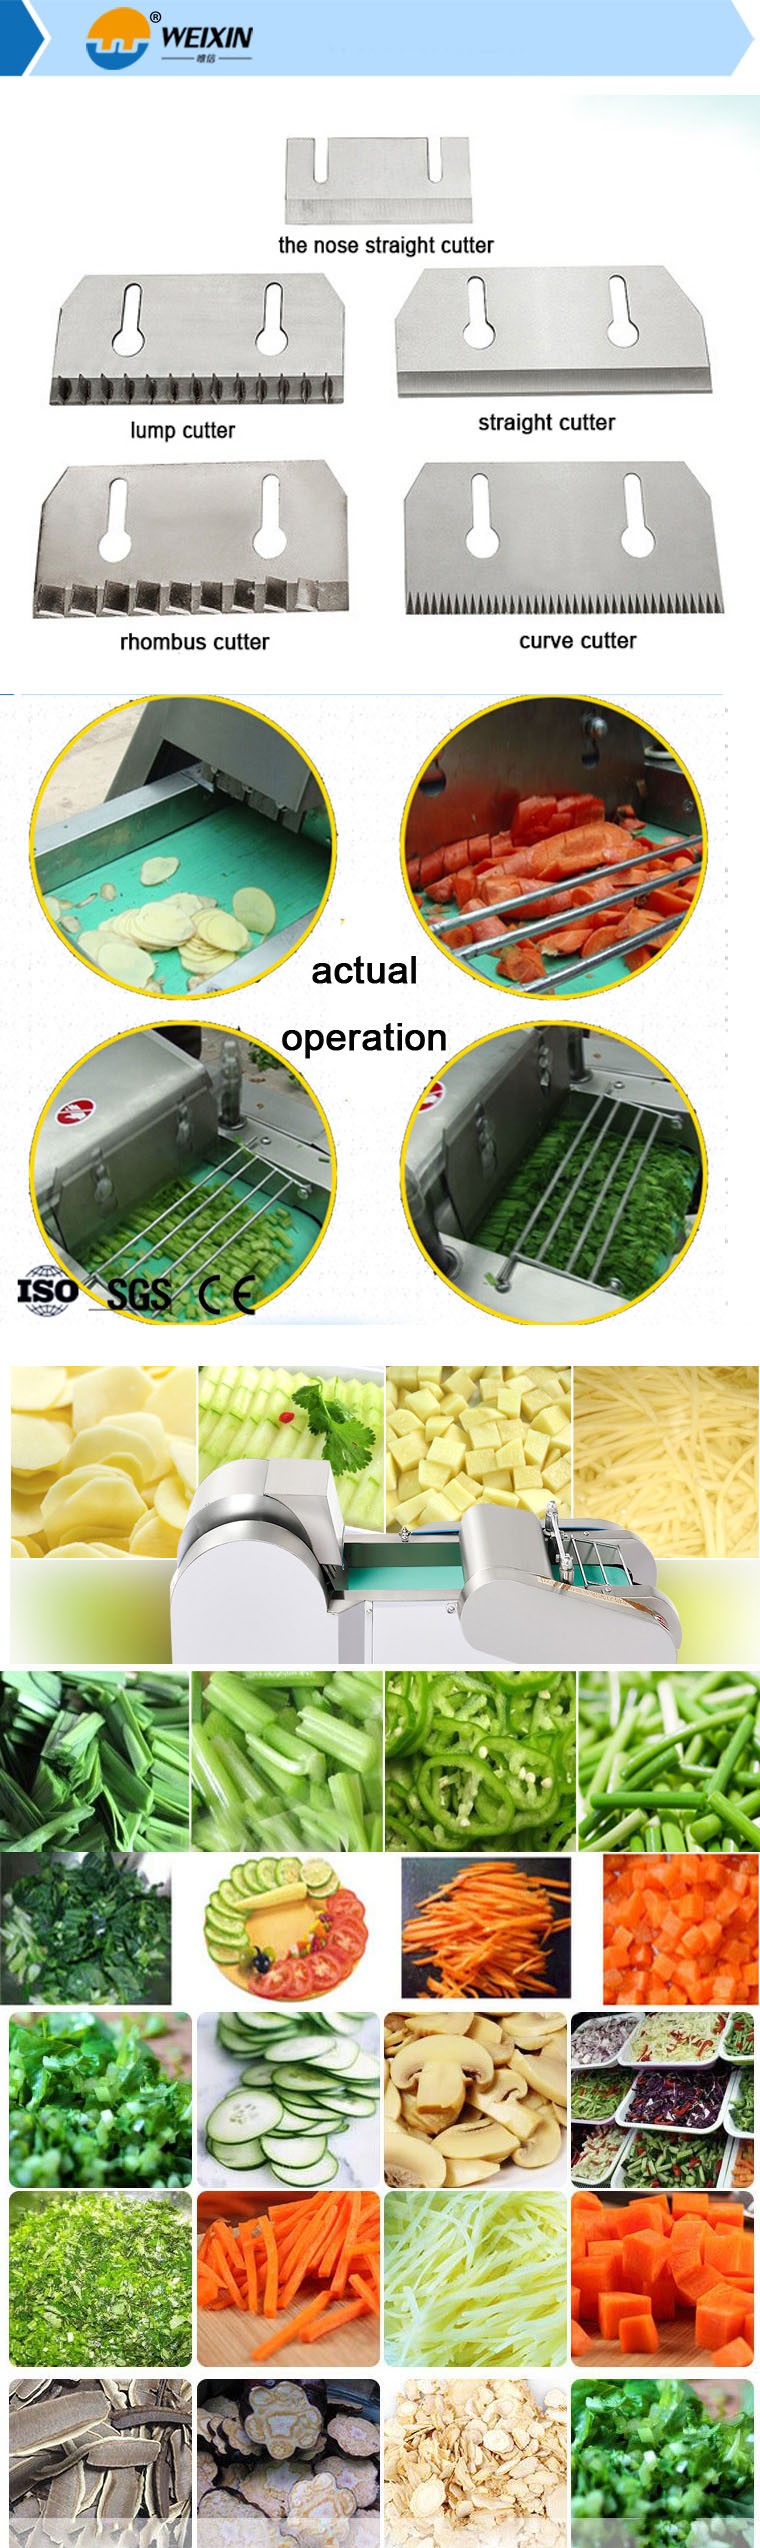 industrial vegetable slicer